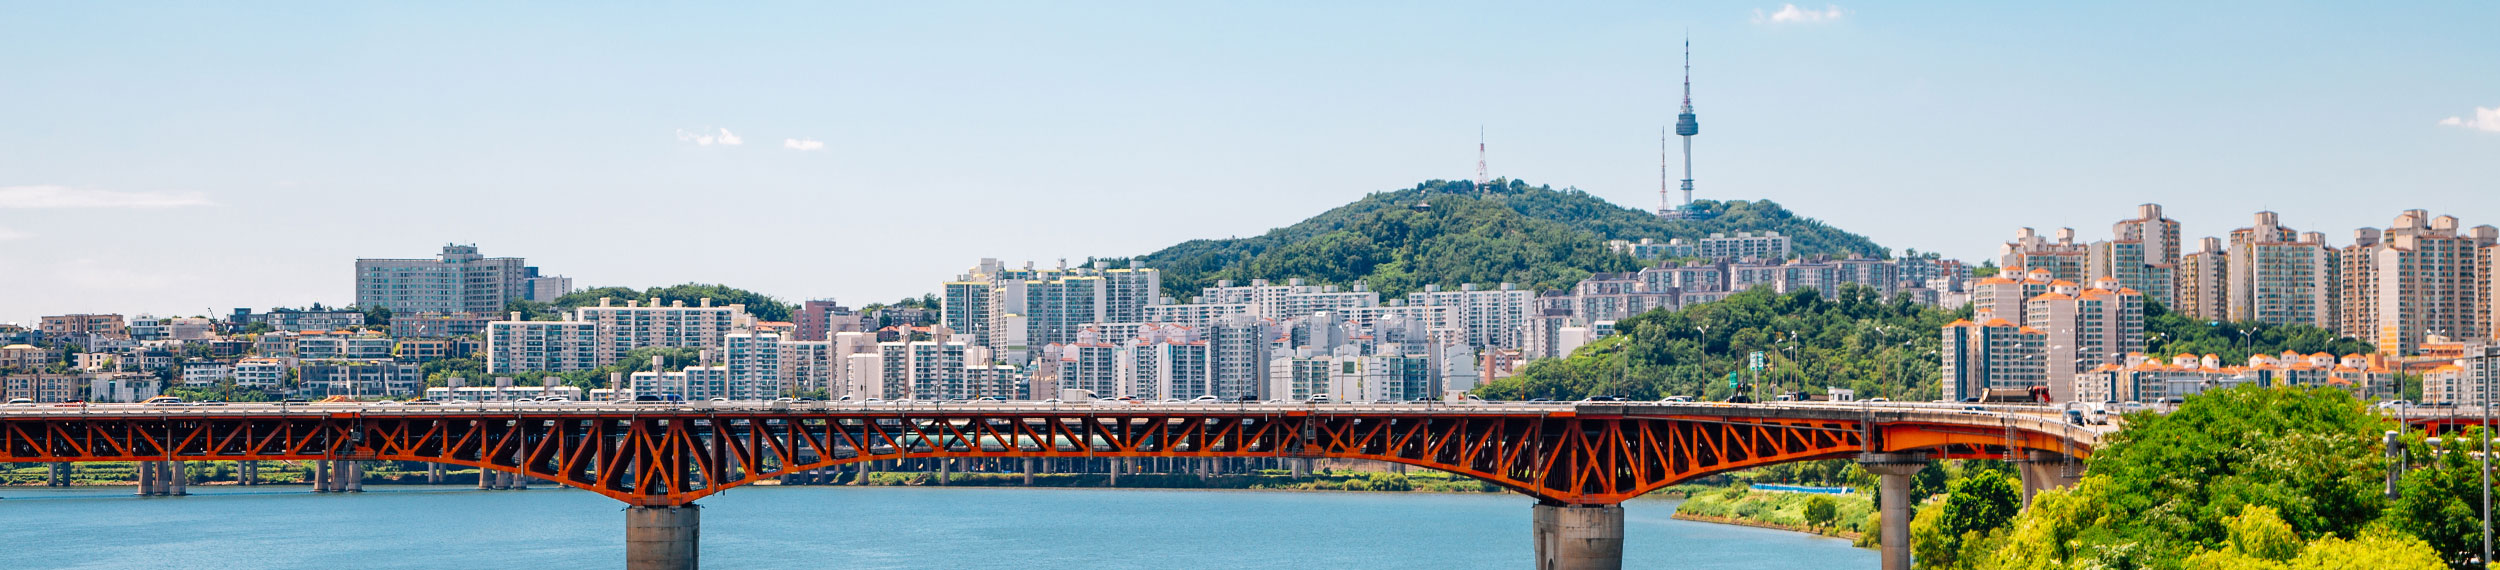 Seongsu Bridge and Seoul city view at Han river park in Korea.